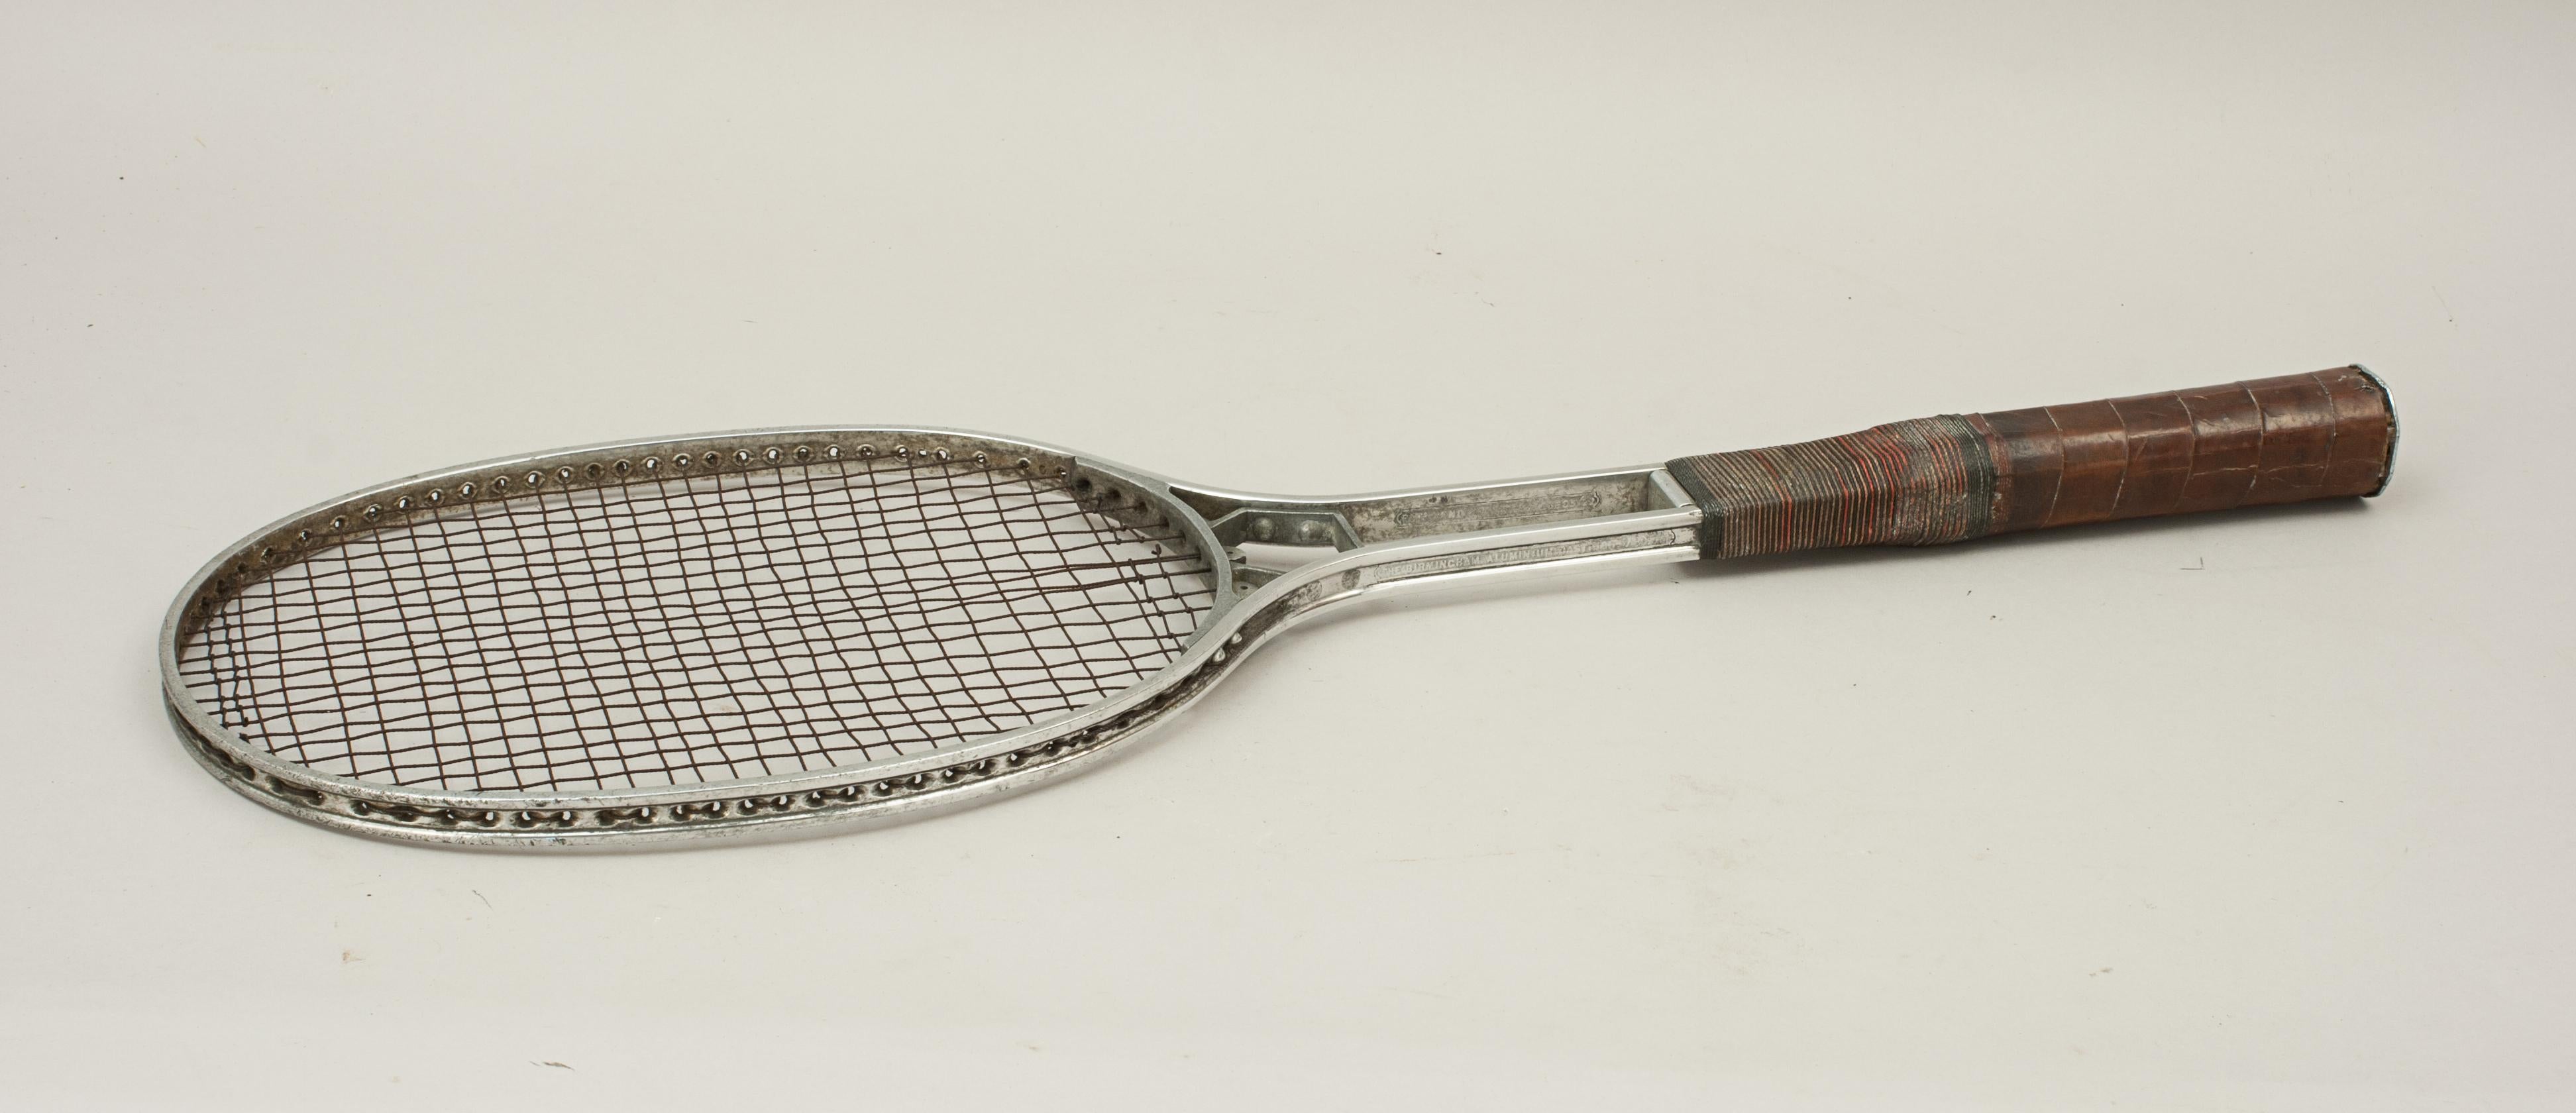 Vieille raquette de tennis, raquette Birmal tout métal.
Belle raquette de tennis sur gazon 